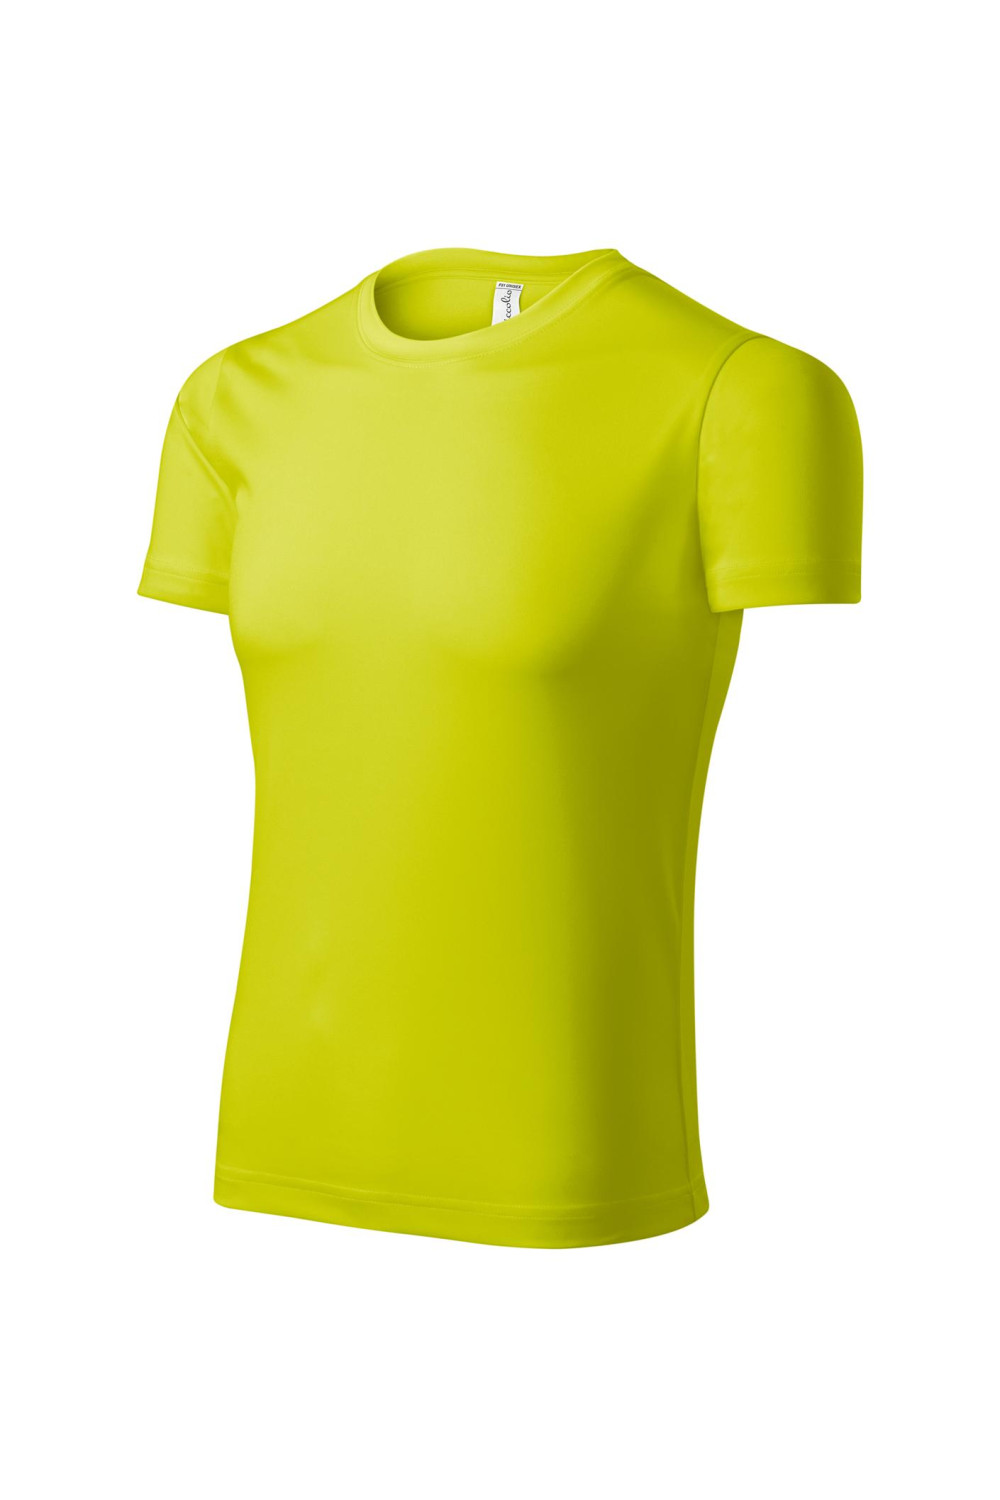 PIXEL P81 MALFINI ADLER Koszulka t-shirt unisex neon yellow